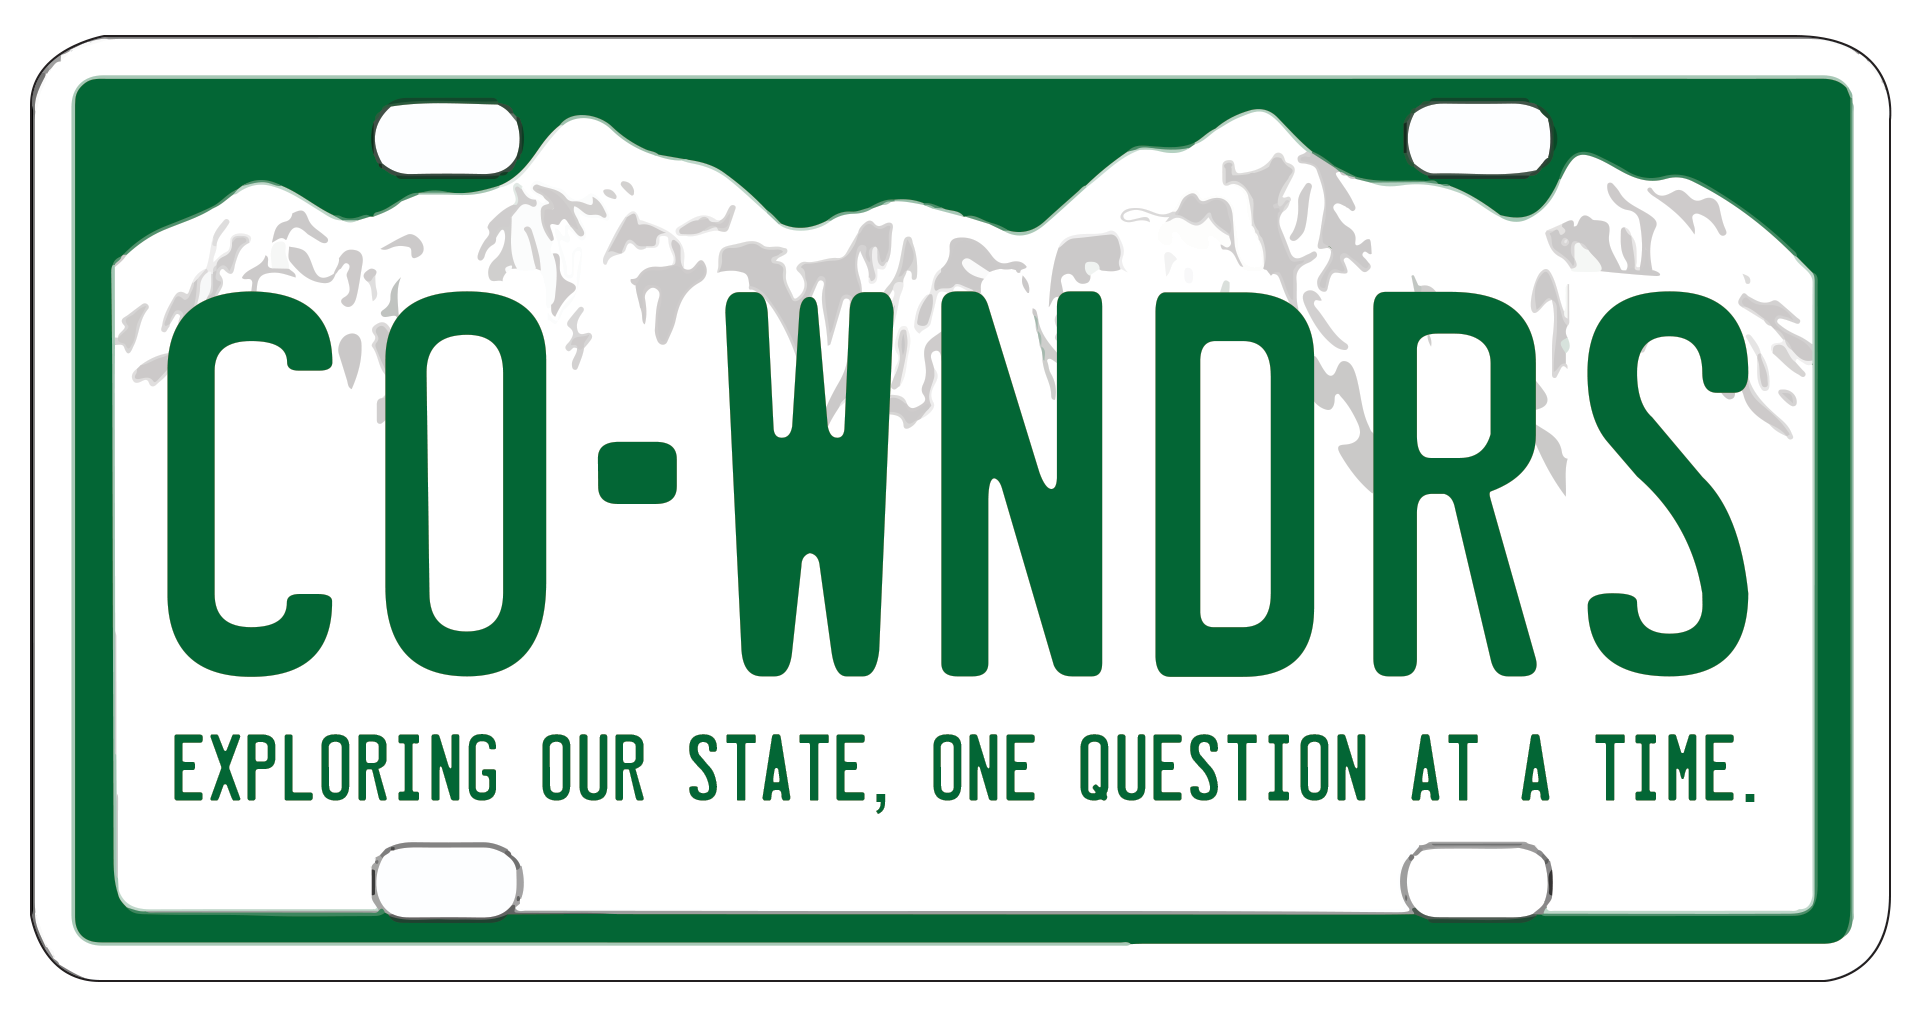 Graphic: Colorado Wonders logo